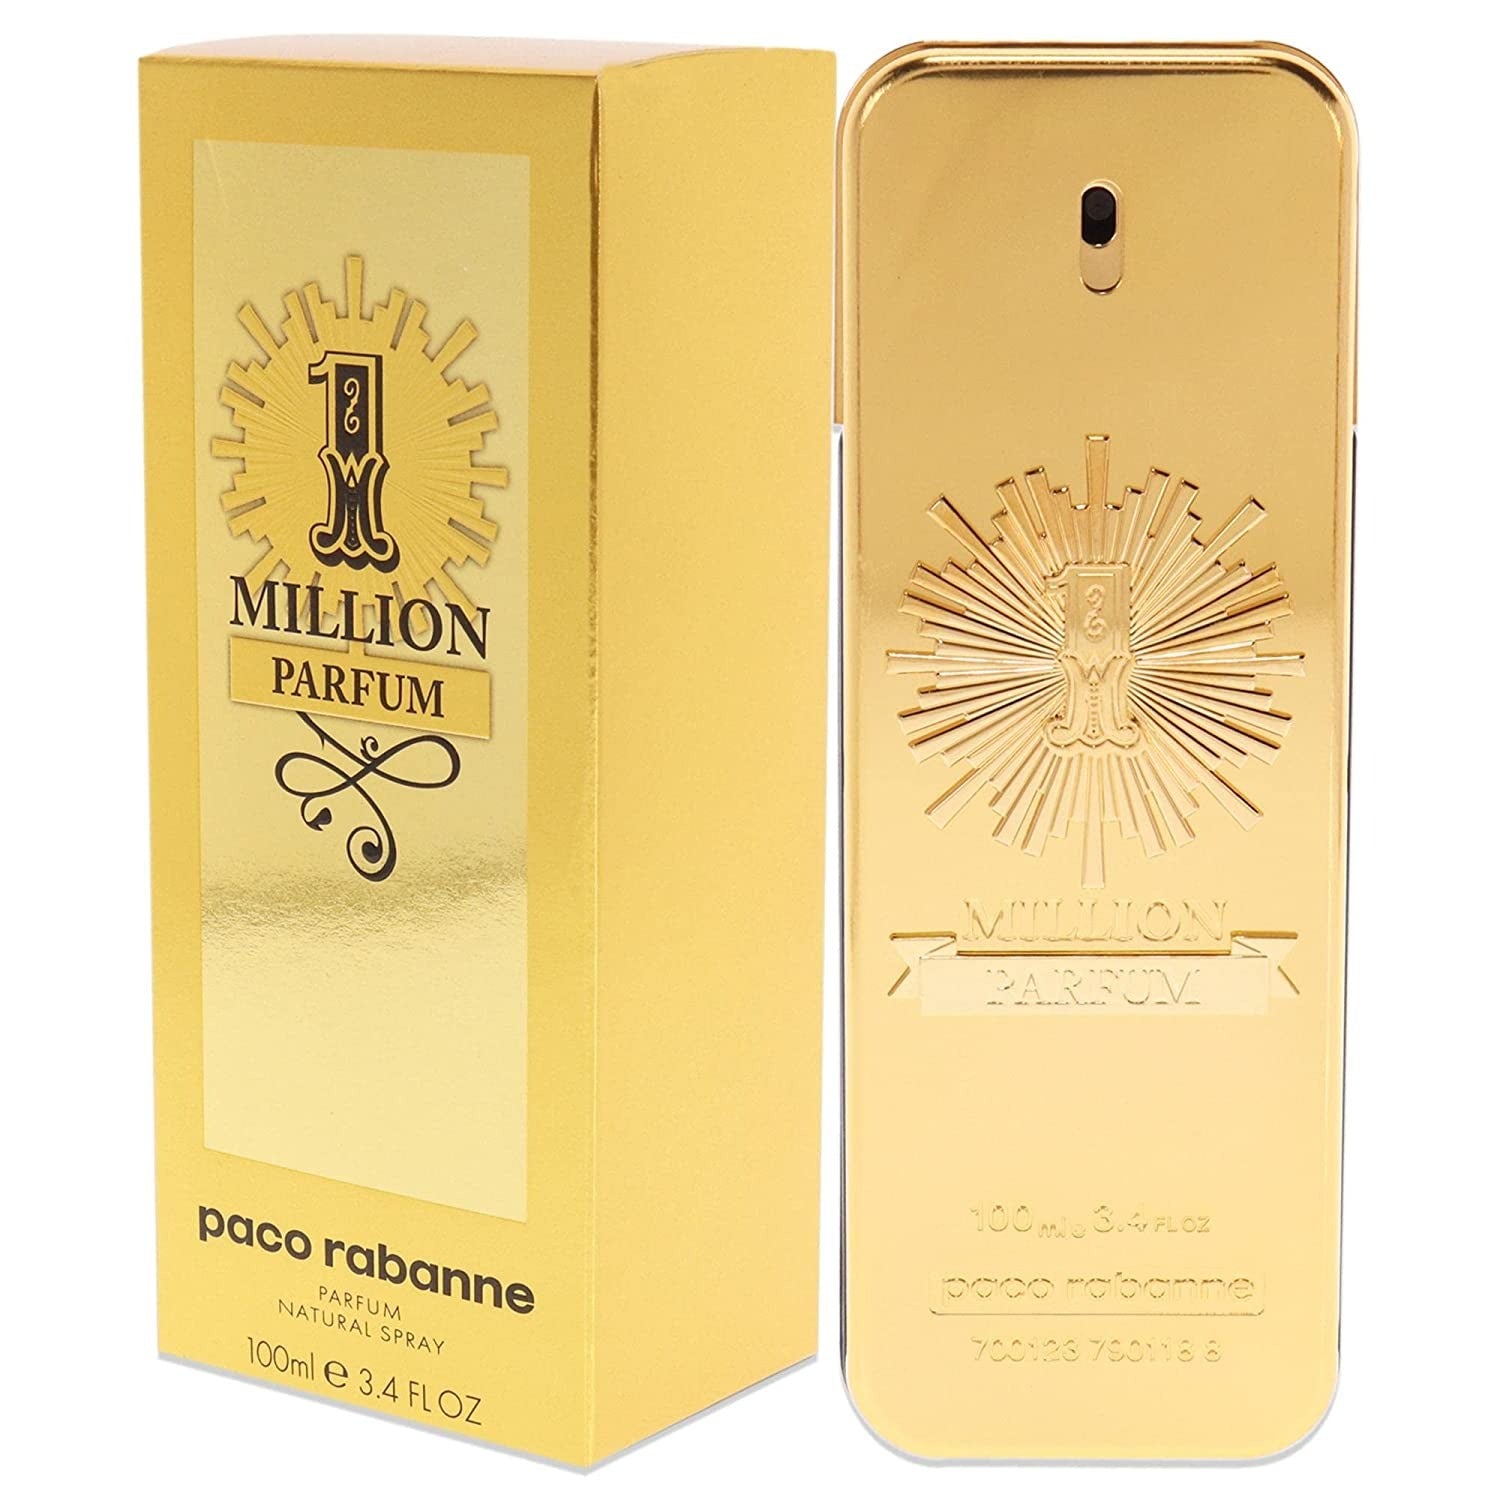 1 Million Parfum by Paco Rabanne 3.4 oz Parfum Spray for Men